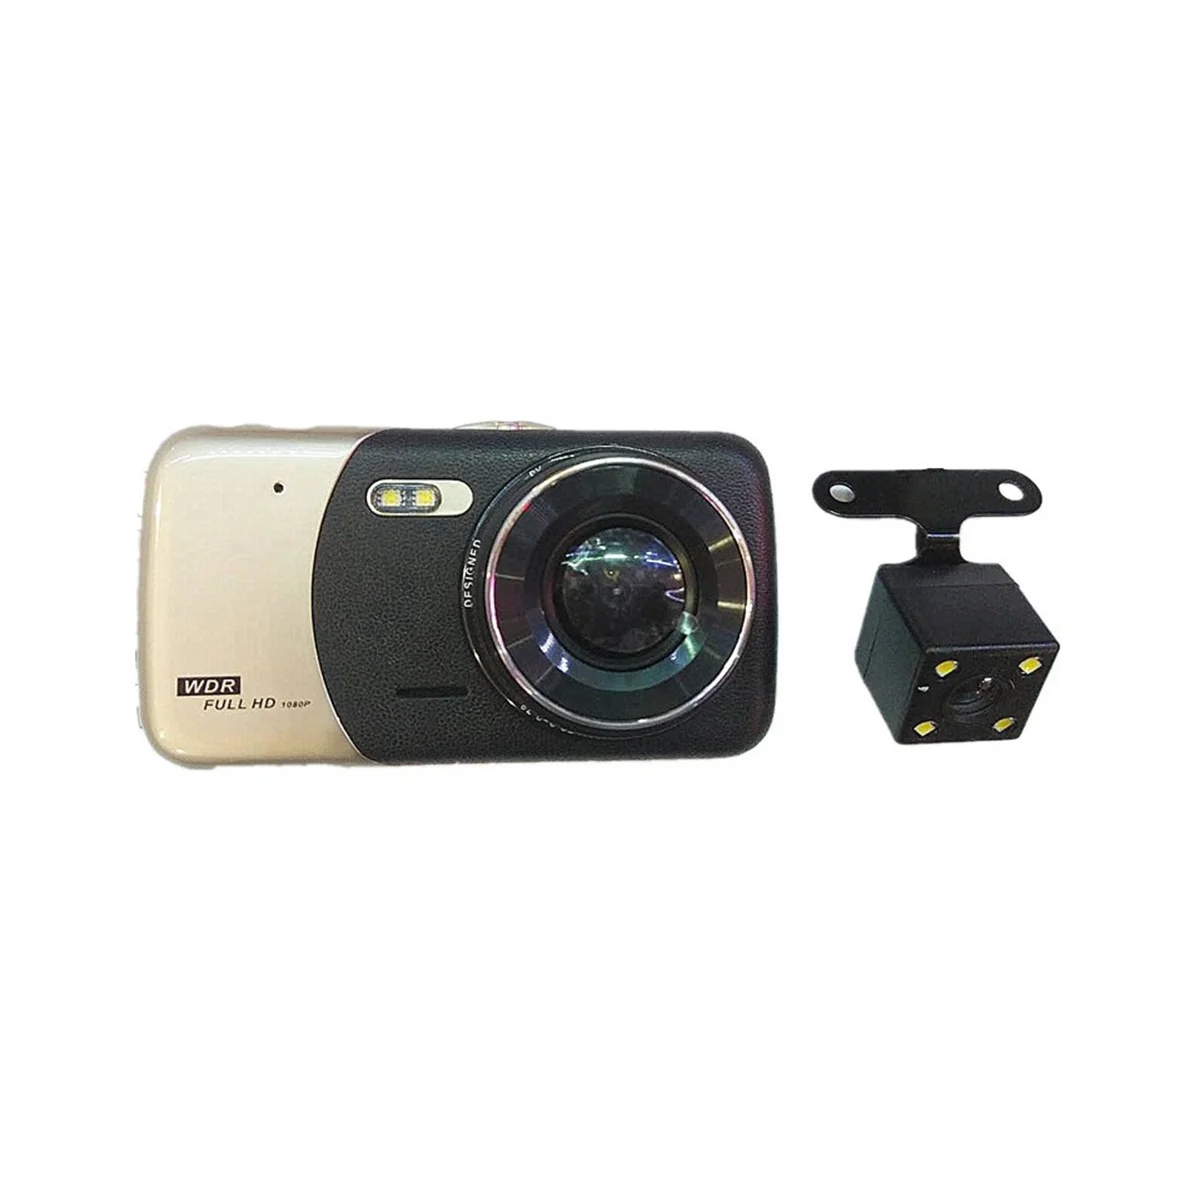 

Автомобильный видеорегистратор 4 дюйма с двумя объективами, автомобильная камера, видеорегистратор Full HD 1080P, видеорегистратор с ночным видением, видеорегистратор для парковки